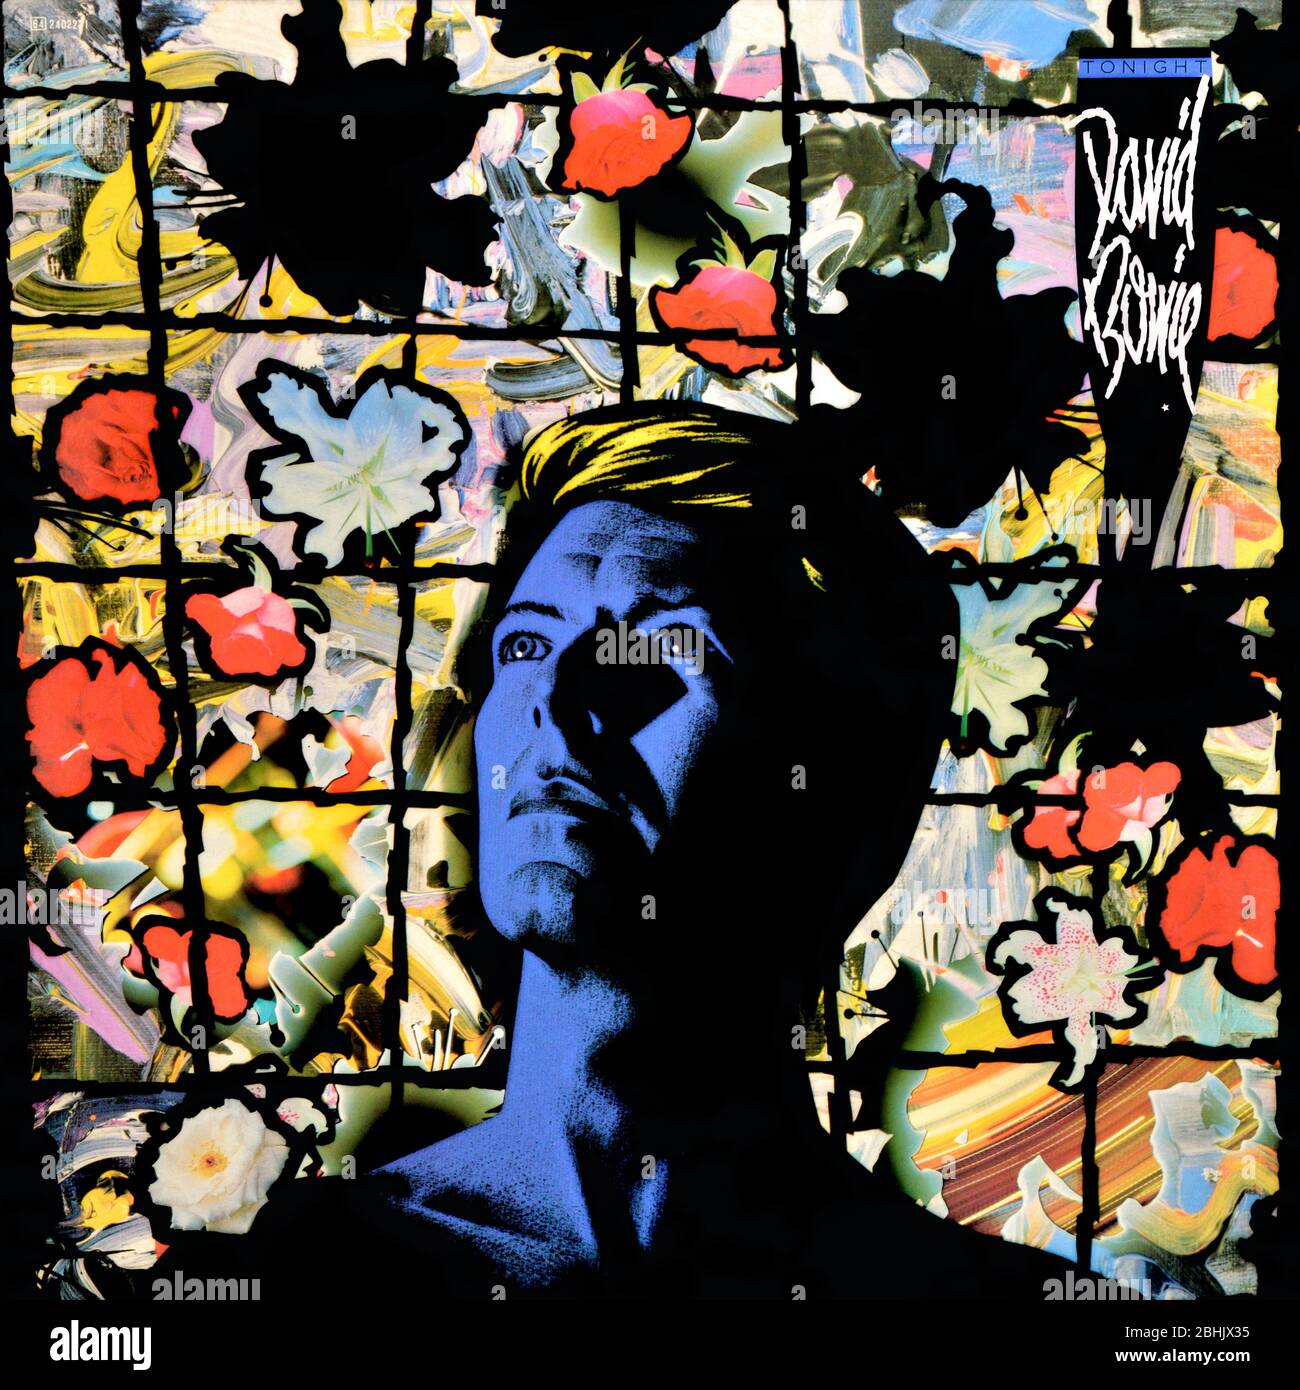 Bowie album covers Banque de photographies et d'images à haute résolution -  Alamy